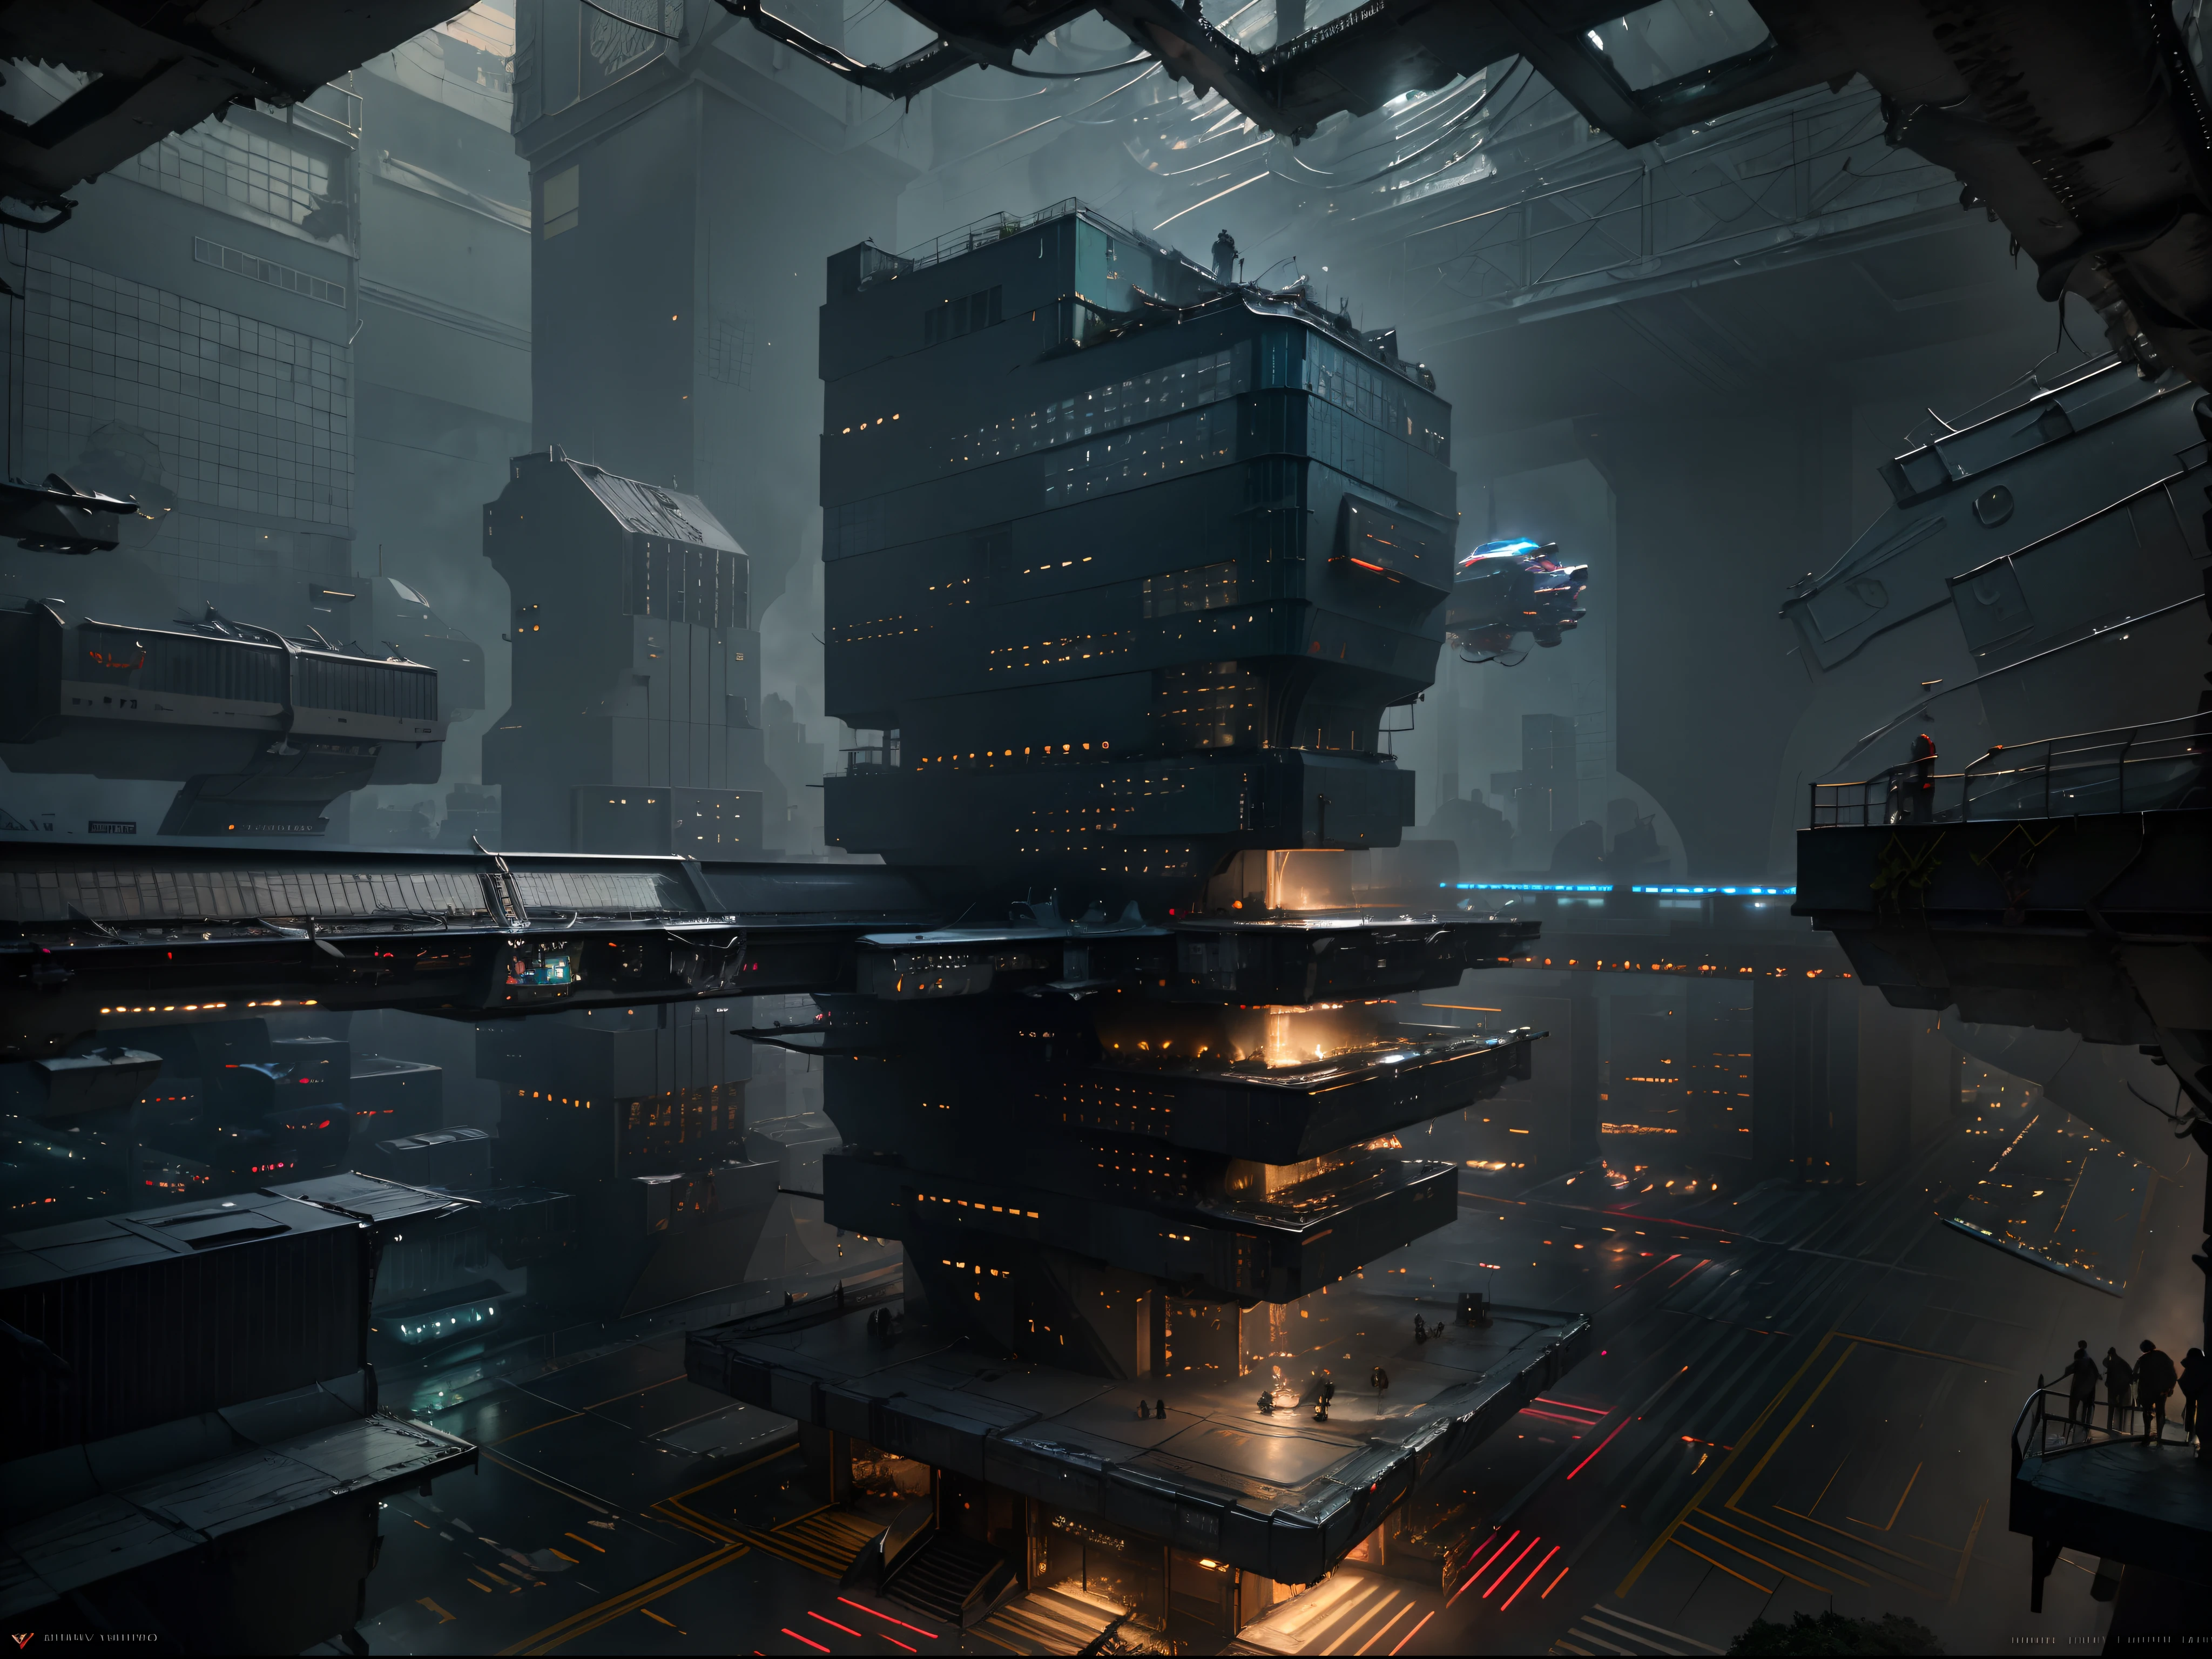 Paisaje urbano cyberpunk con imponentes rascacielos, señales de neón, y coches voladores.